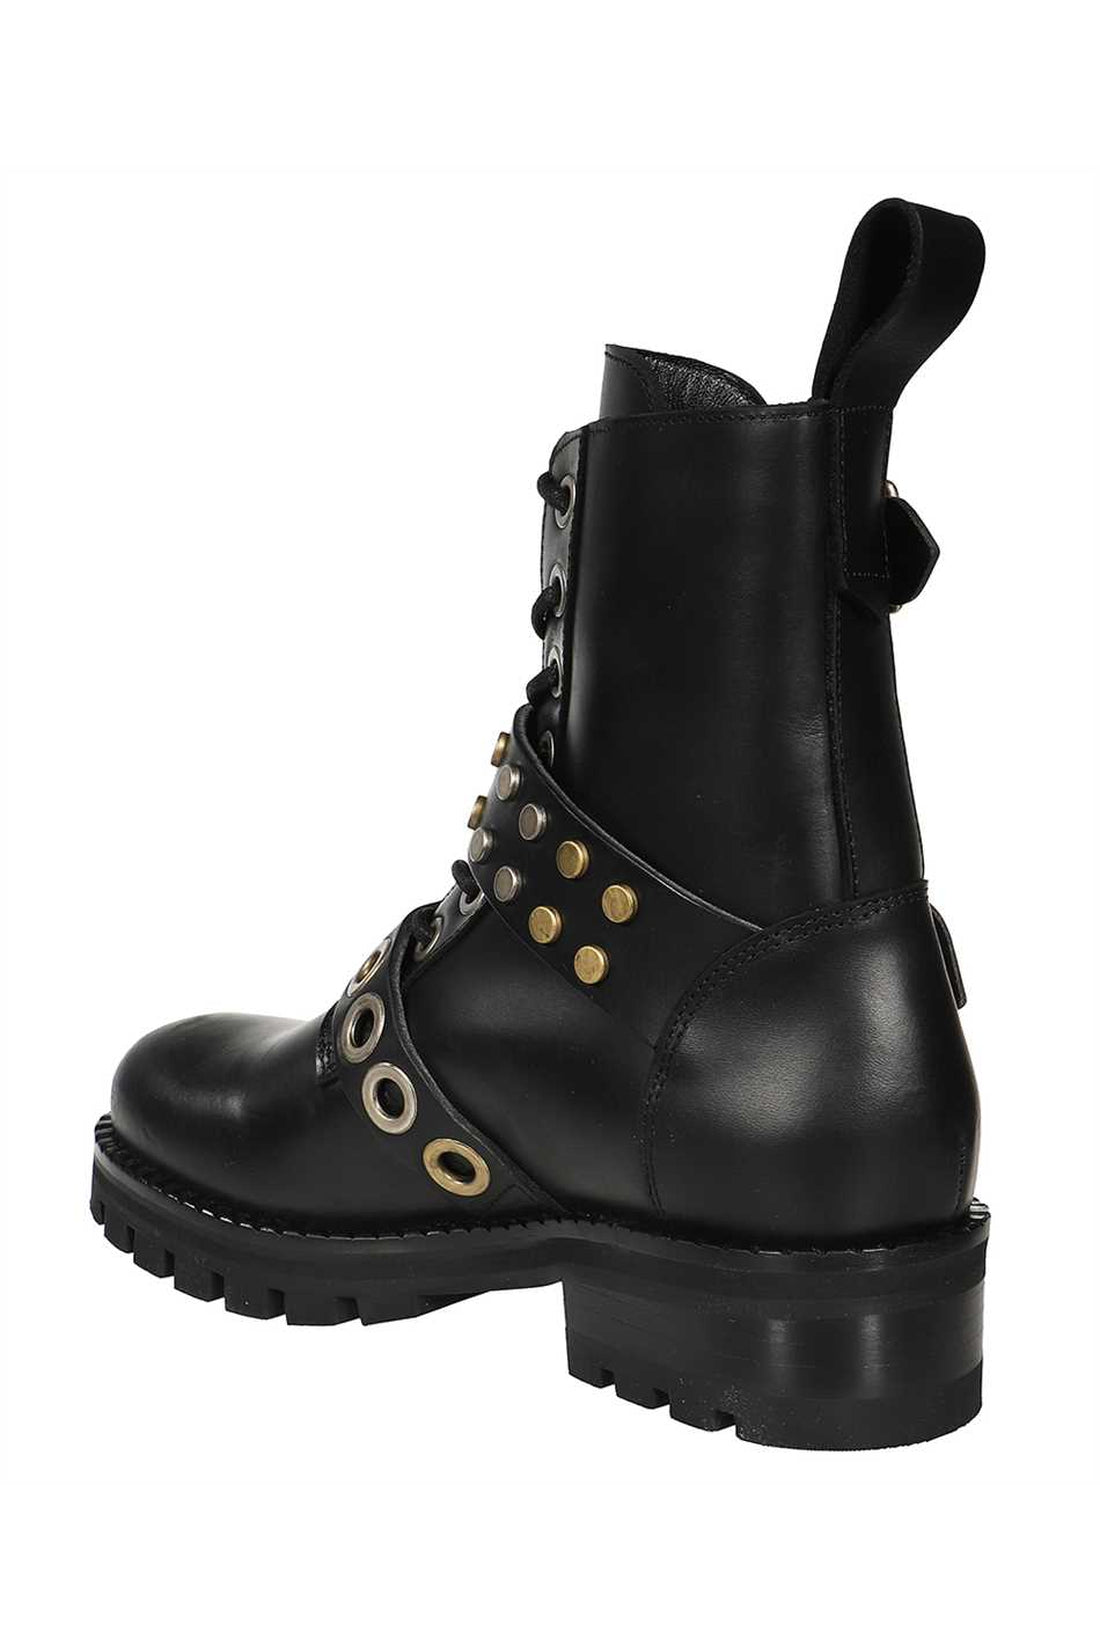 Vivienne Westwood-OUTLET-SALE-Leather combat boots-ARCHIVIST